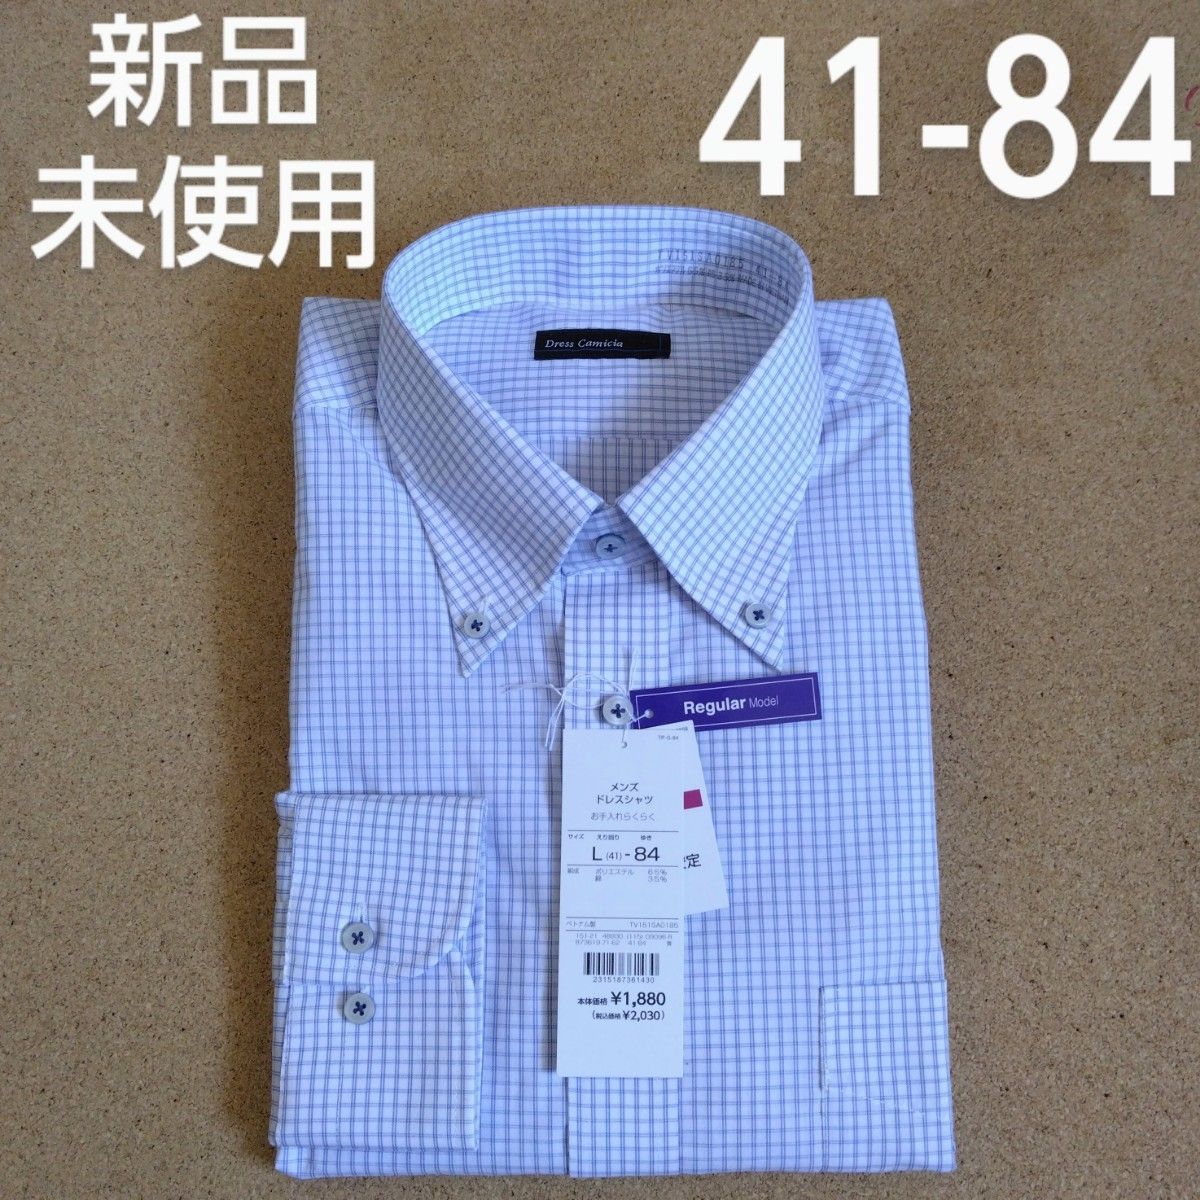 【新品】Dress Camicia ワイシャツ 長袖 41-84  XL ドレスシャツ